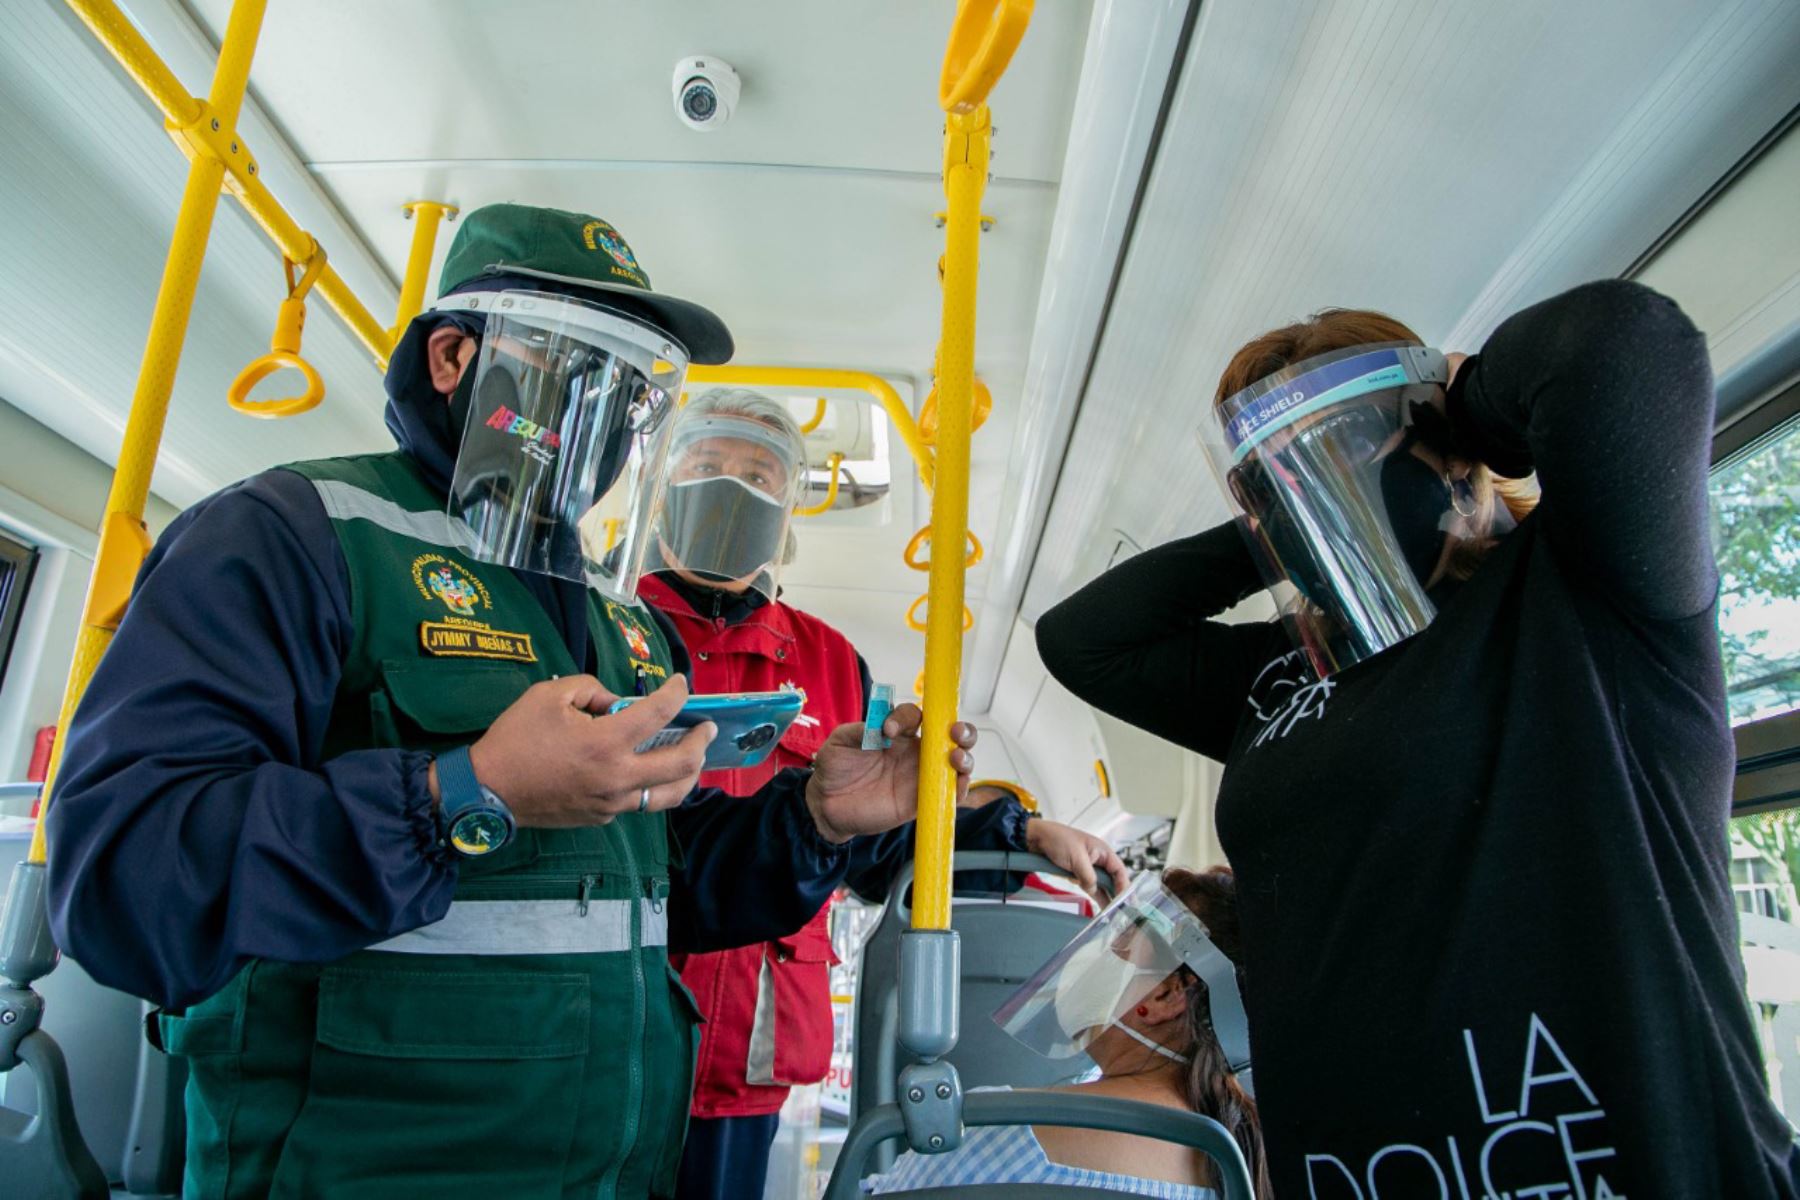 La municipalidad provincial de Arequipa empezó la distribución de escudos faciales a los usuarios del transporte público para evitar el contagio con el coronavirus.